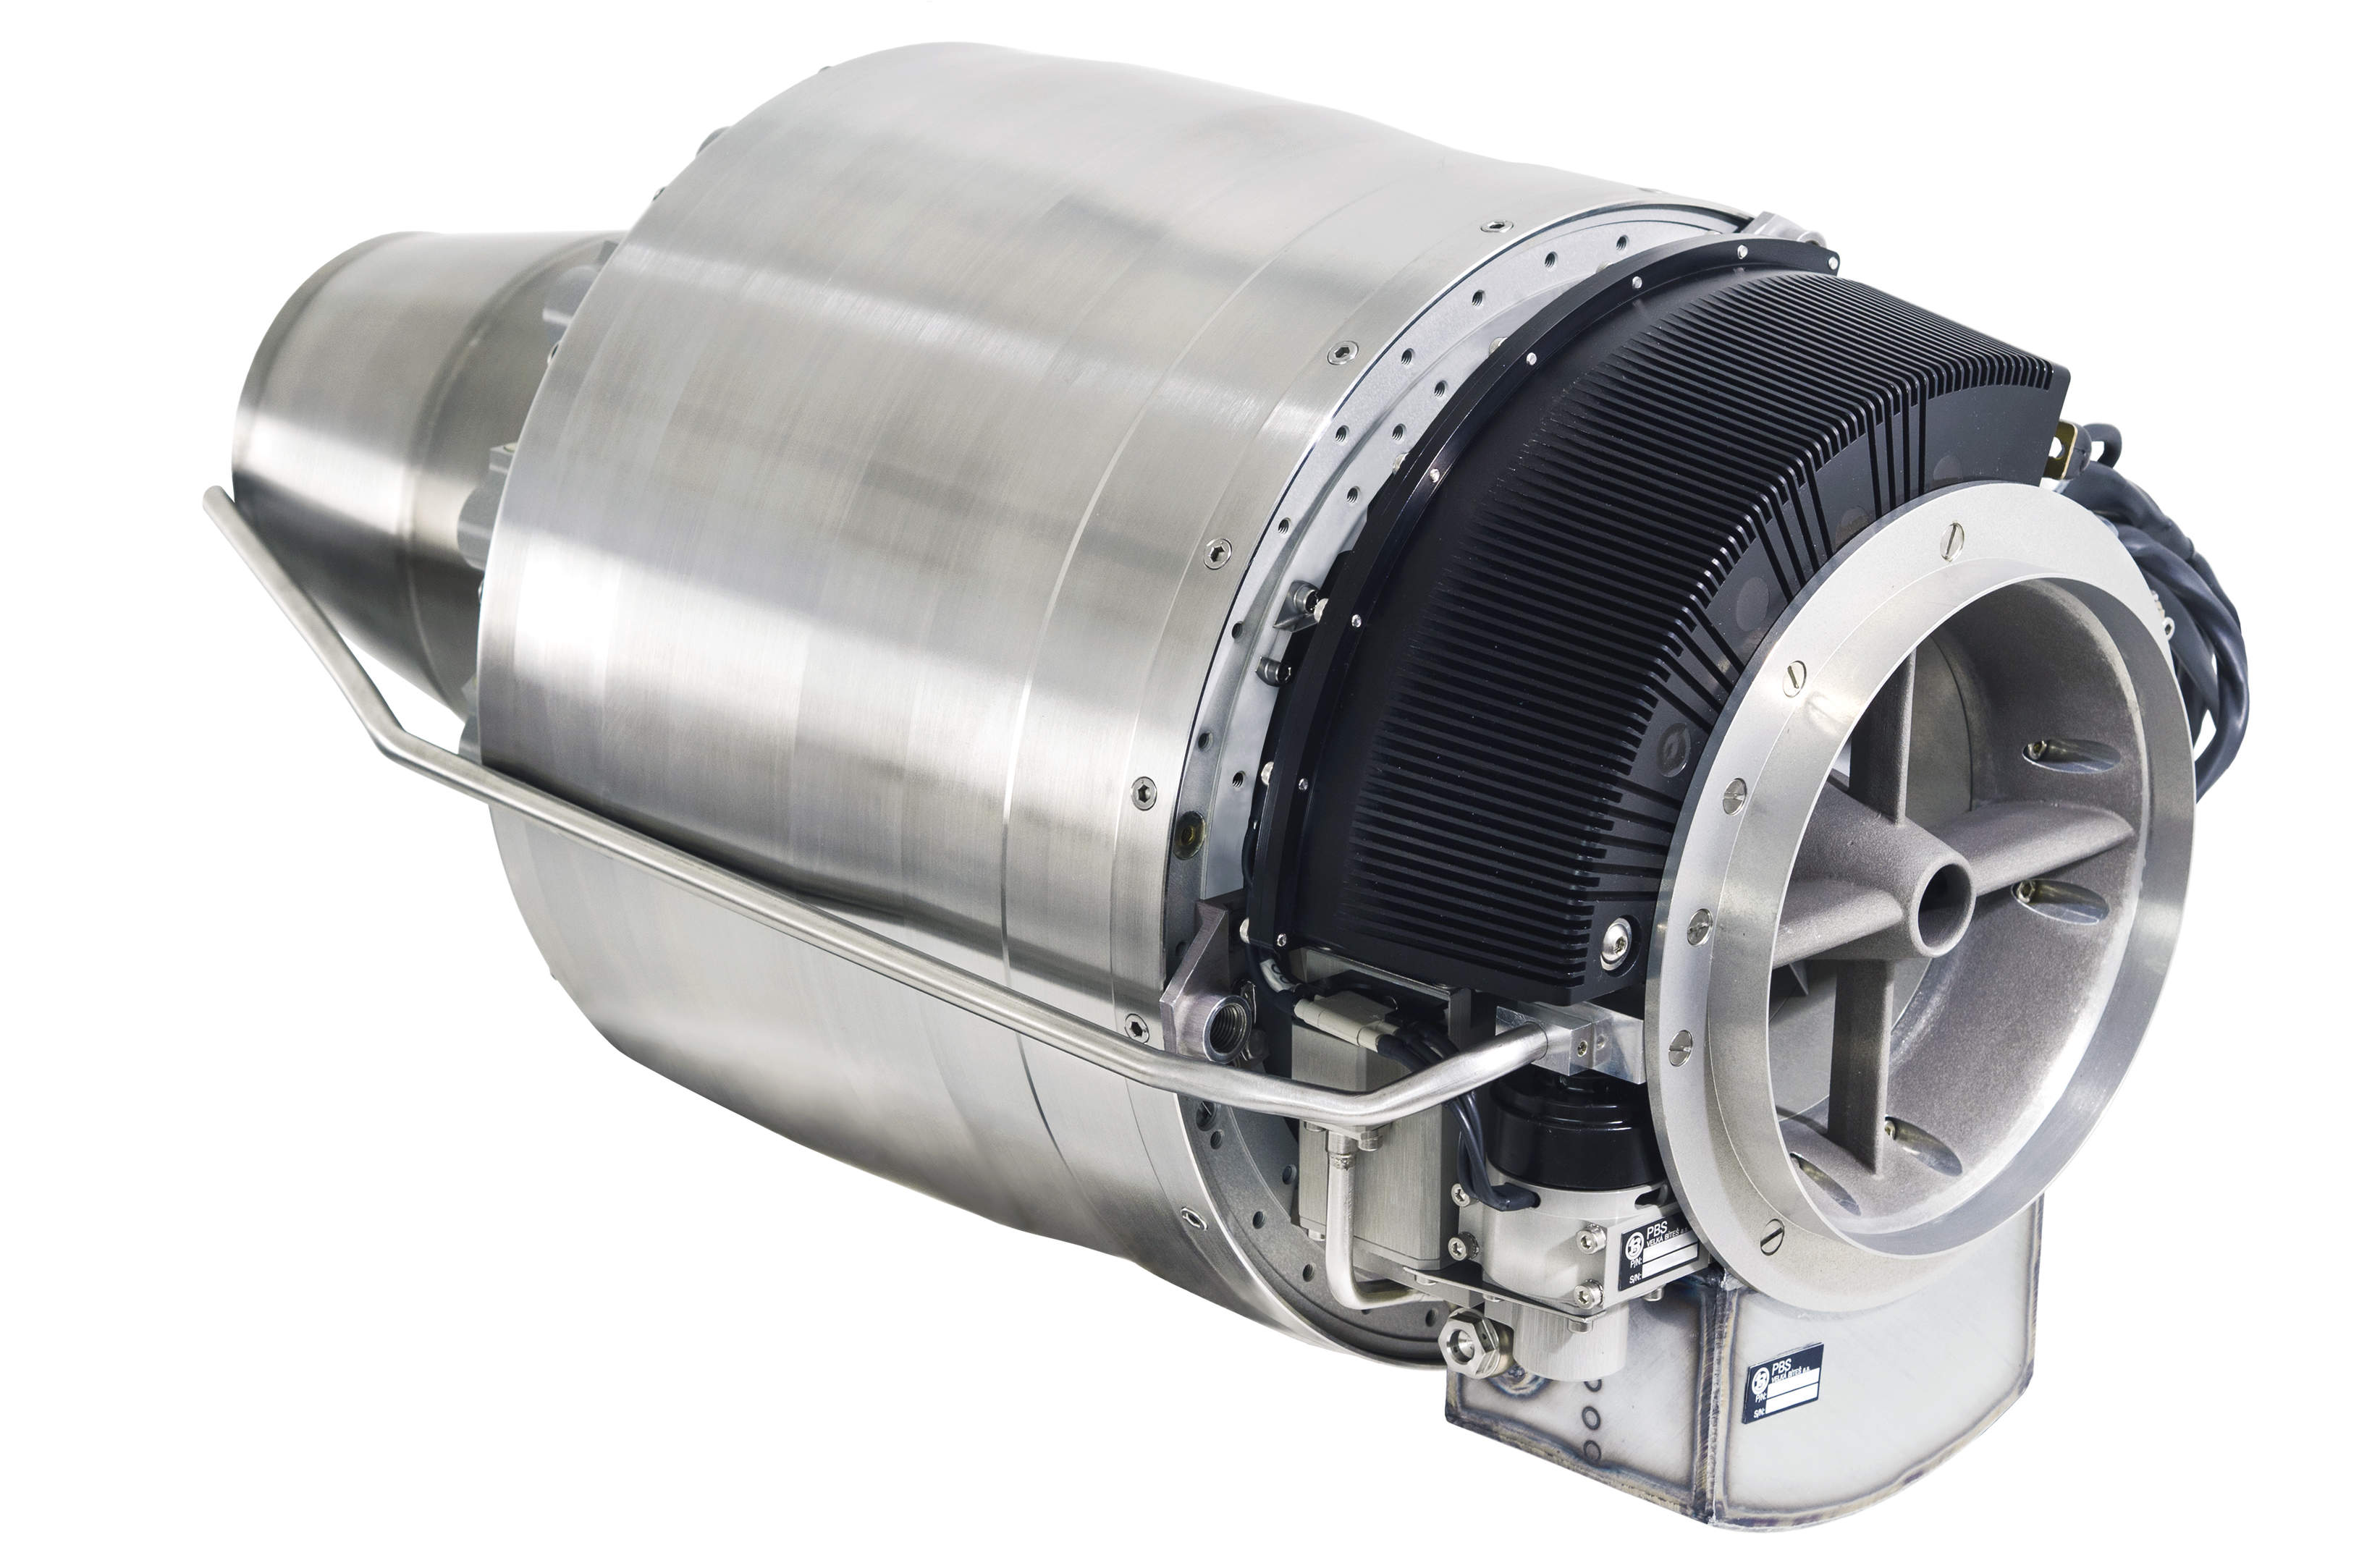 PBS Velká Bíteš zahájila sériovou výrobu svého nejsilnějšího proudového motoru